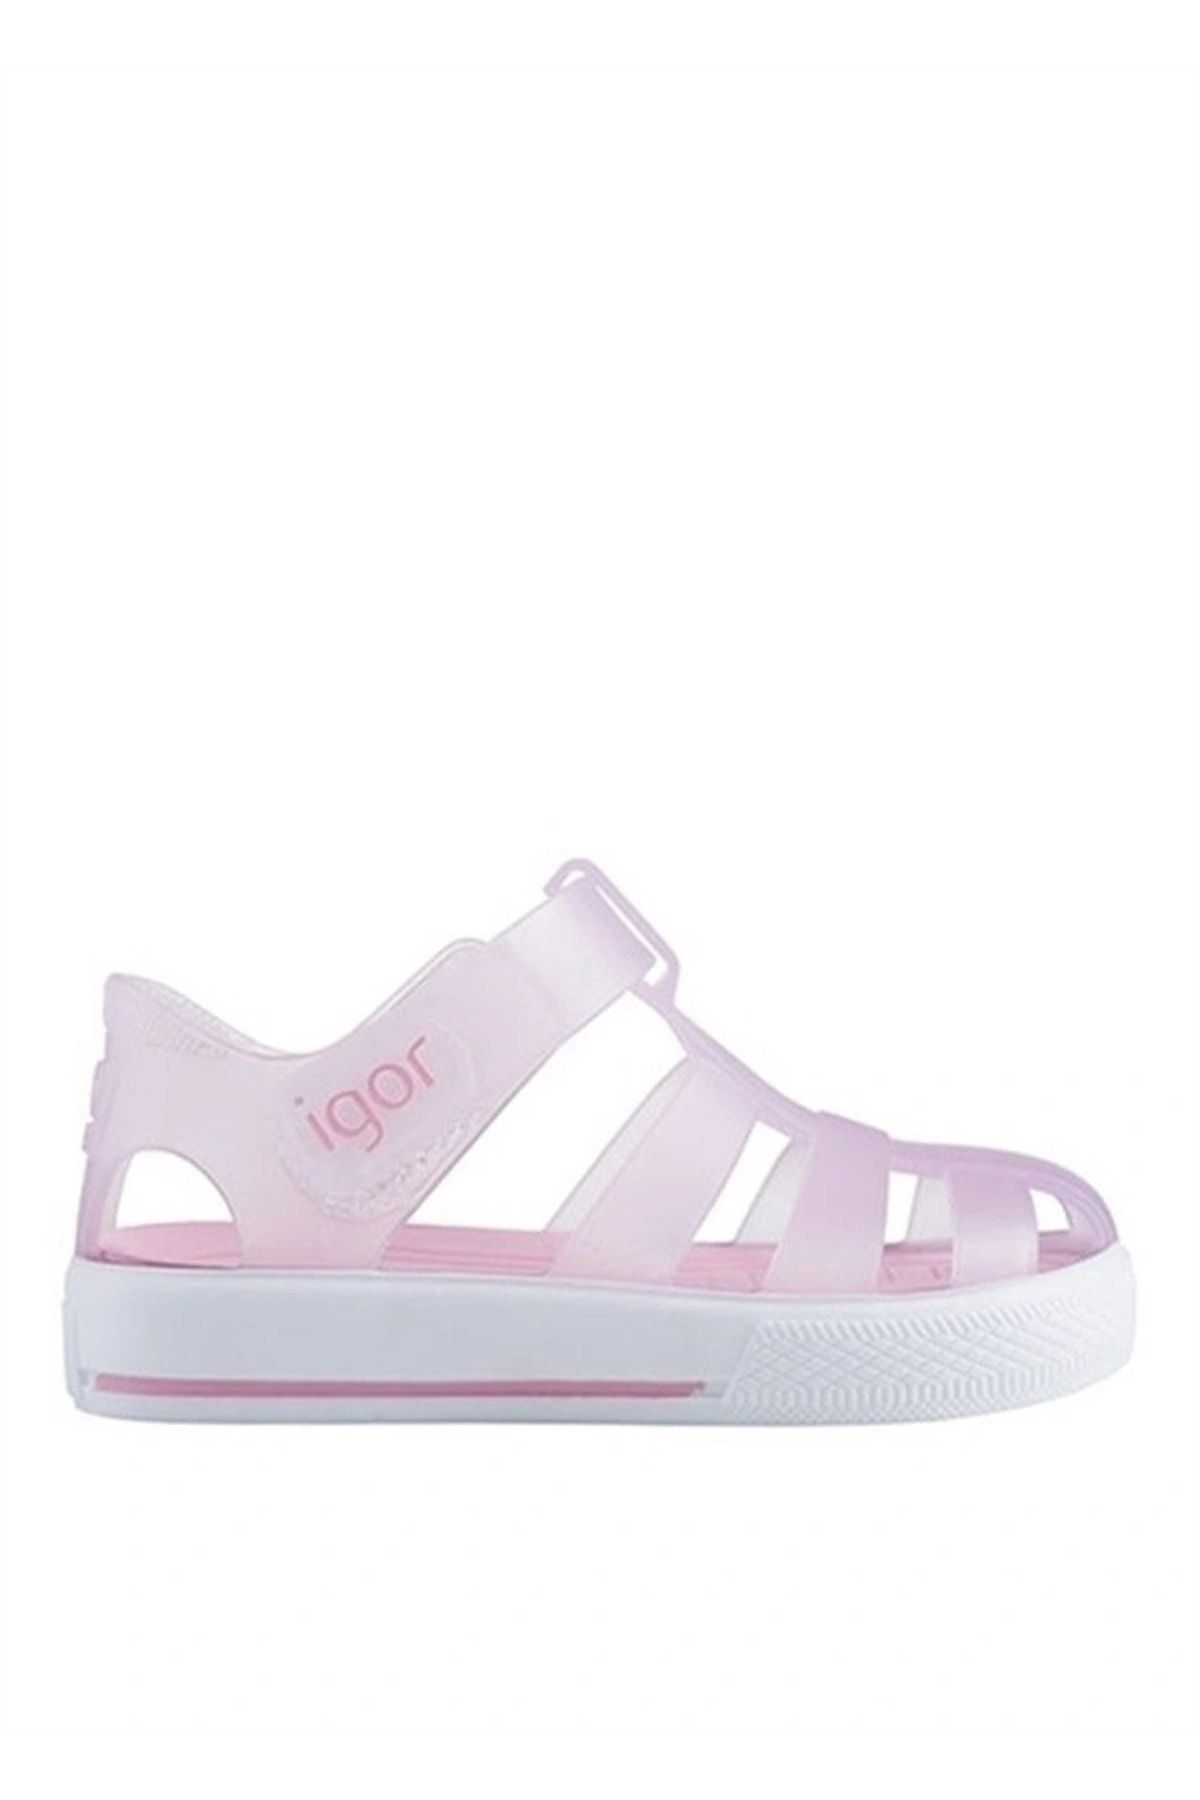 IGOR Star Bebek Çocuk Sandalet Ayakkabı Pembe S10171